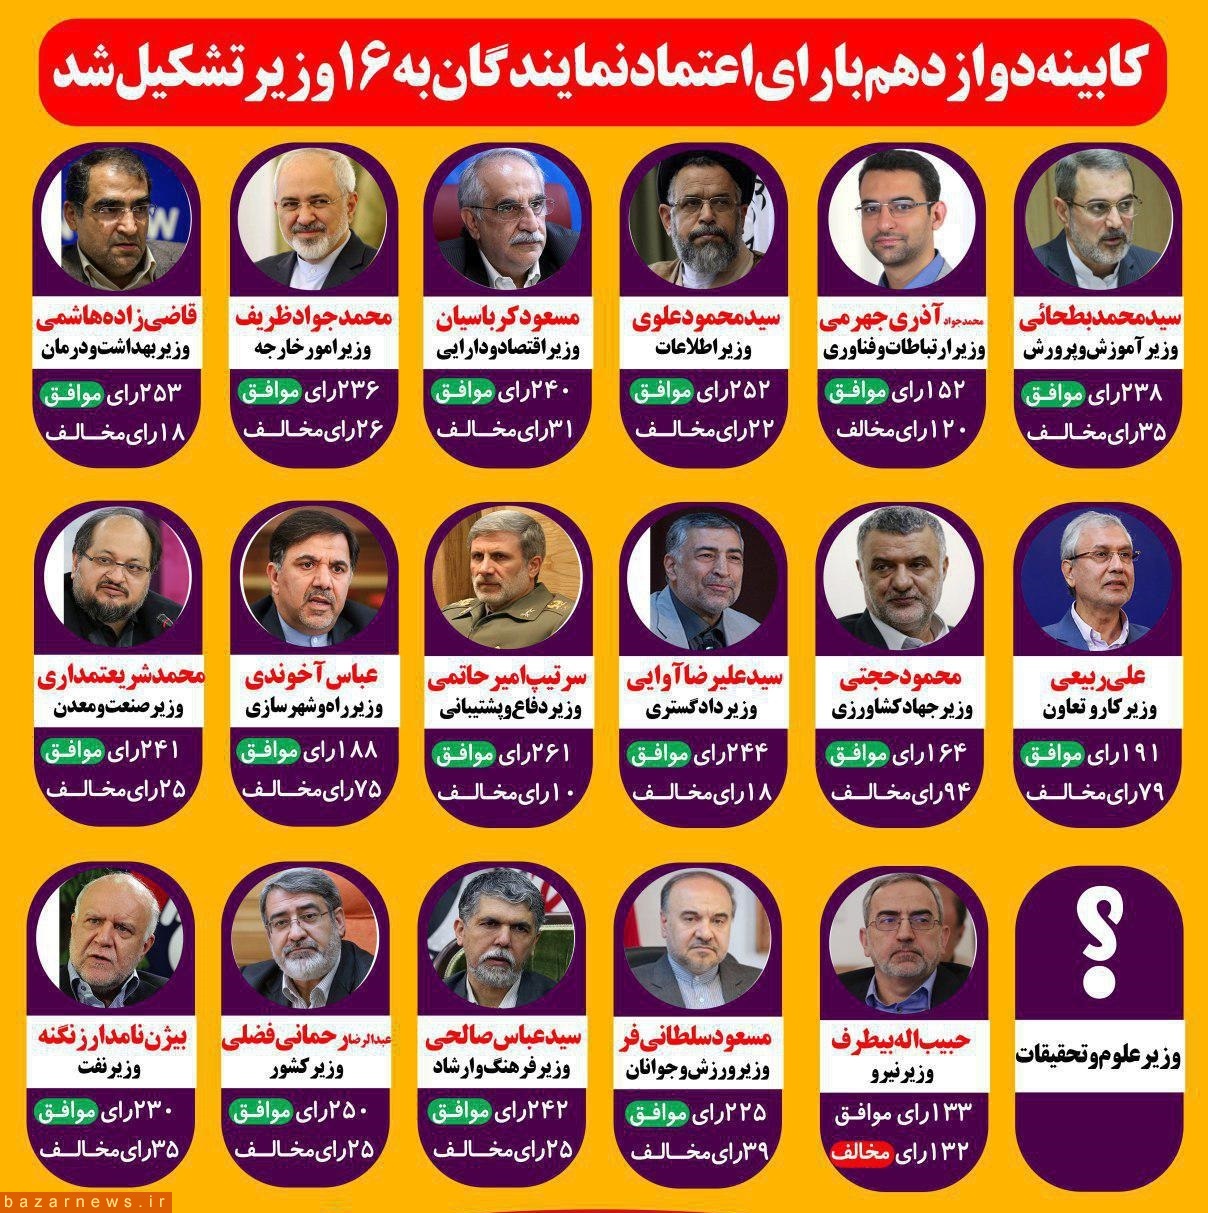 نتیجه رای اعتماد به کابینه روحانی / جدول نتایج